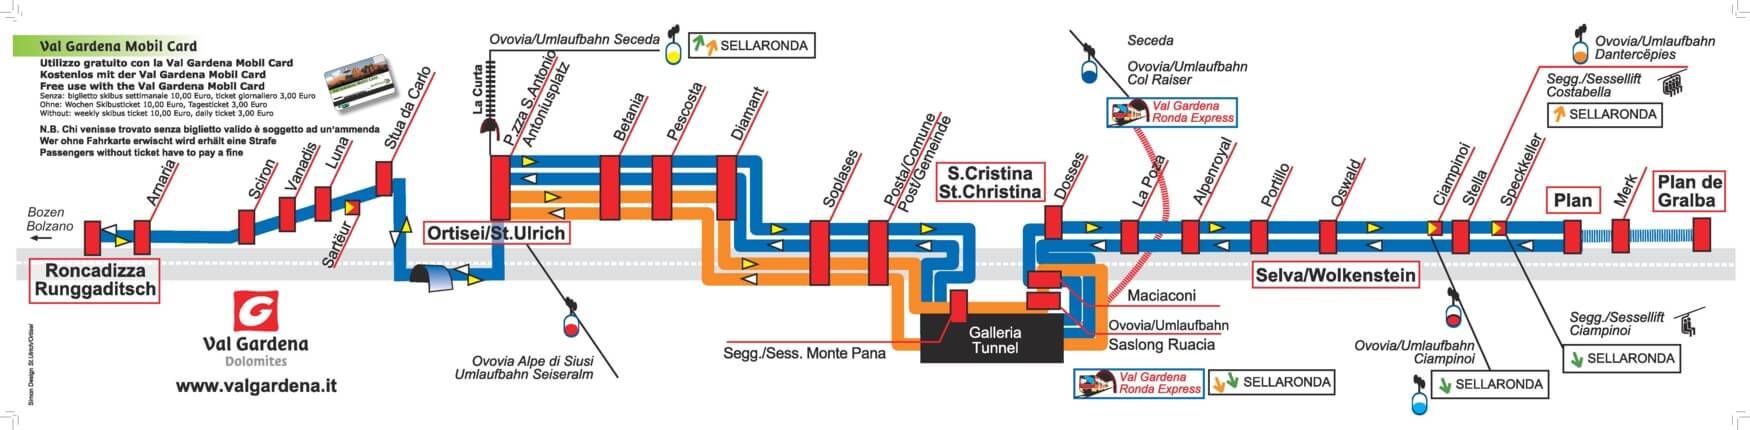 val-gardena-ski-bus-route-timetable